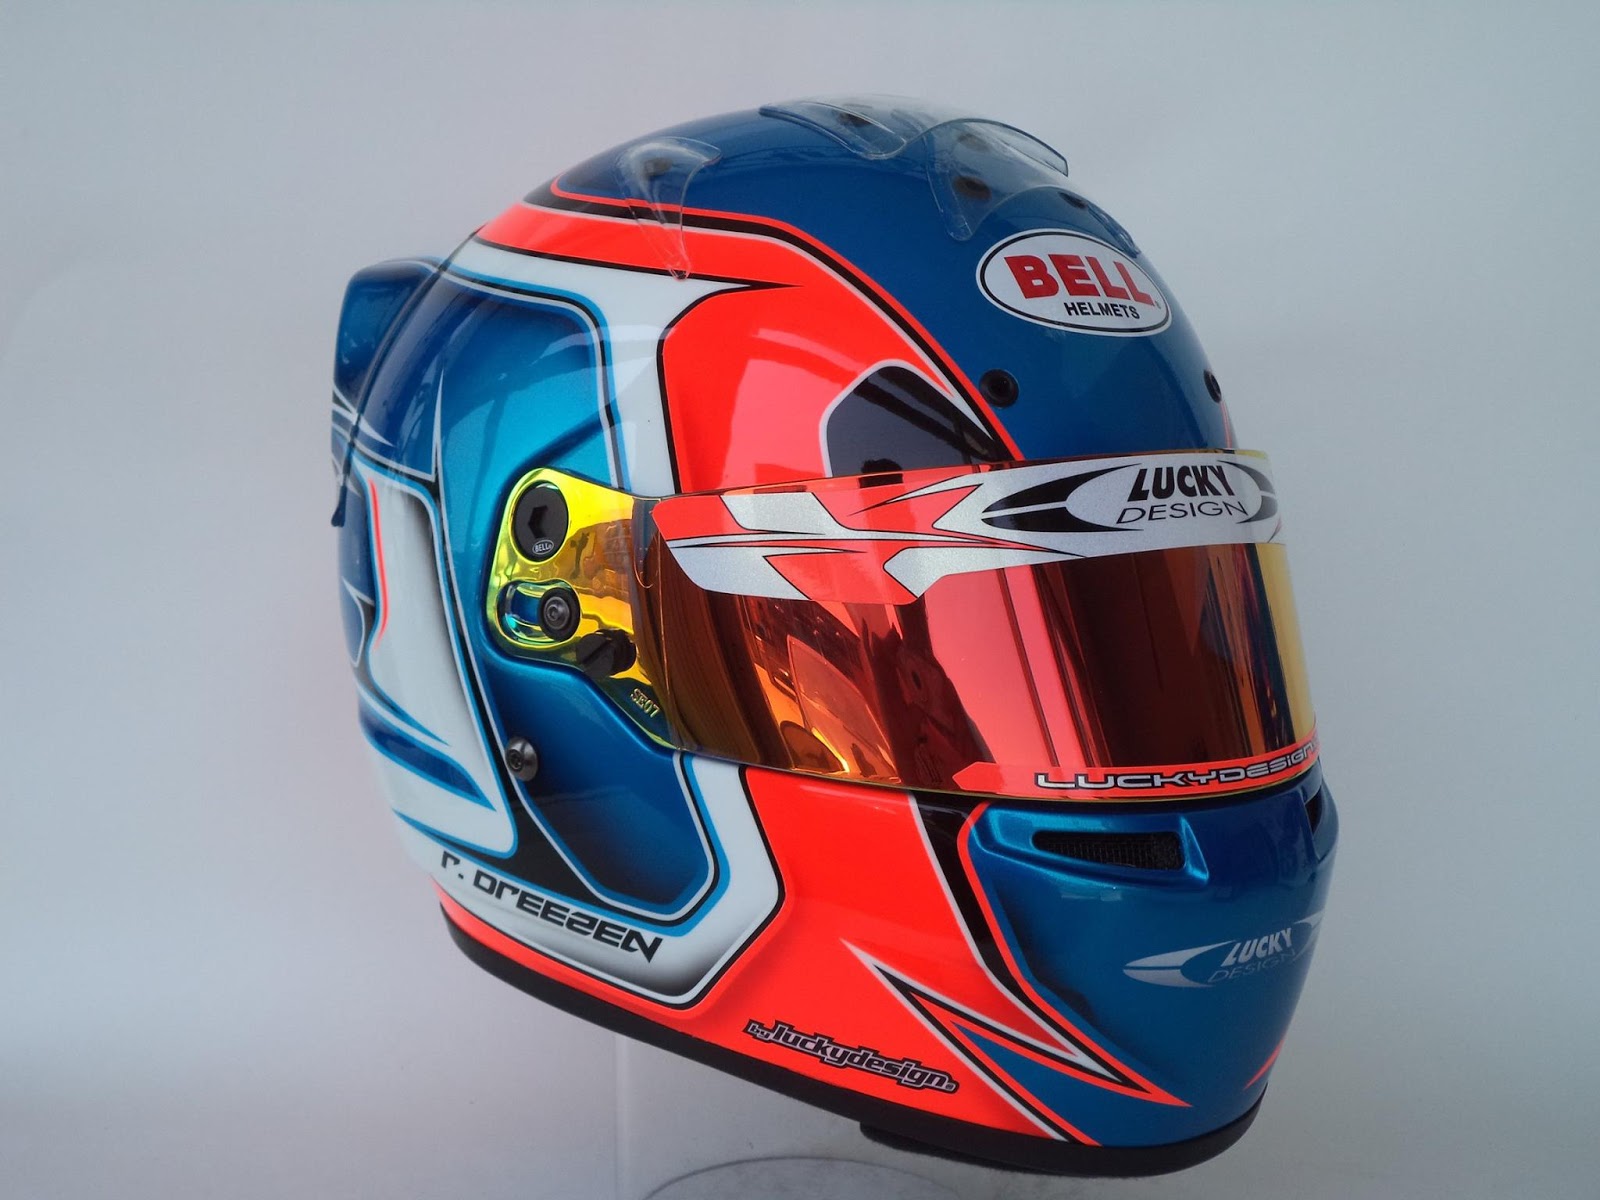 Racing Helmets Garage: Bell HP7 R.Dreesen 2015 by Lucky Design